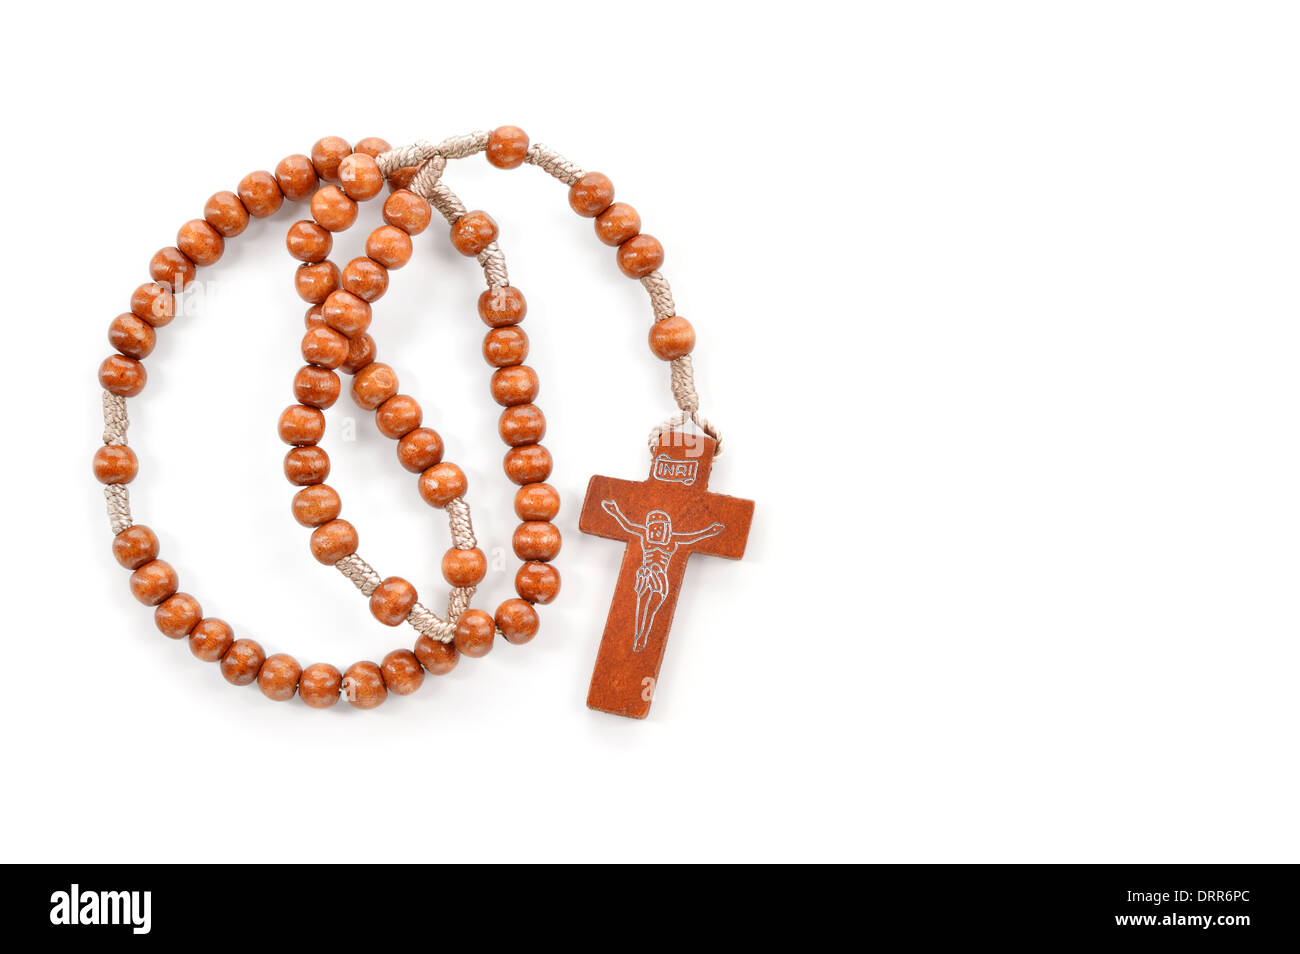 Pianura in legno rosario su sfondo bianco. I grani di preghiera utilizzare per contare le ripetizioni delle preghiere - Il Rosario della Vergine Maria. Foto Stock